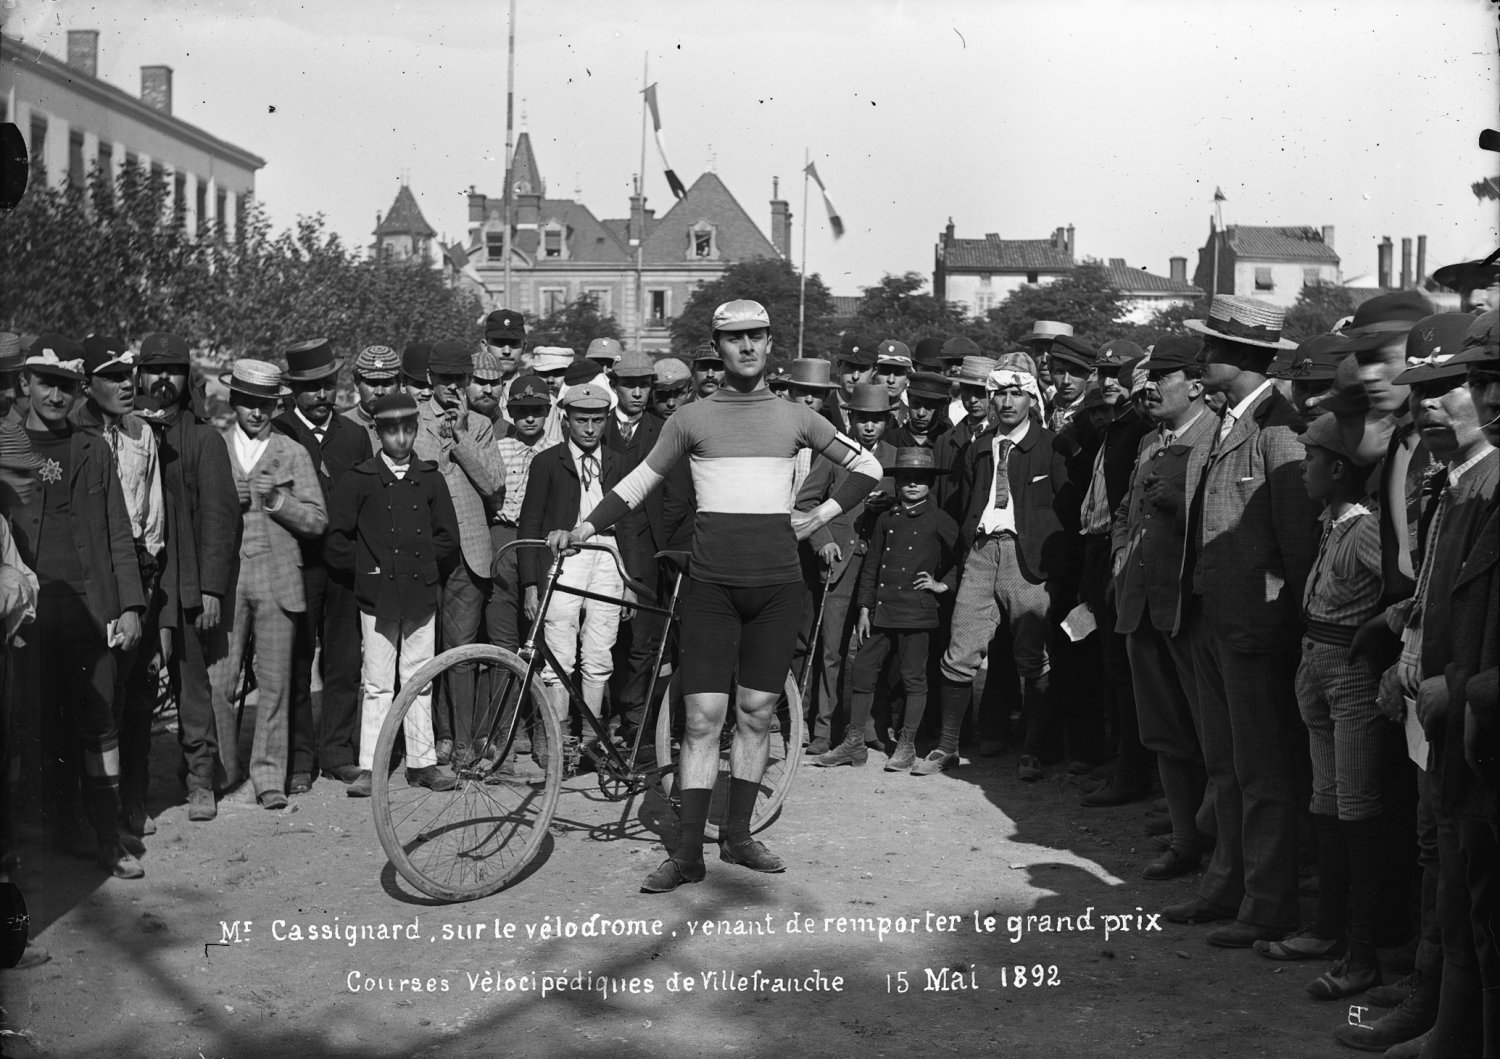 [Courses vélocipédiques de Villefranche 15 mai 1892 : le vainqueur, M. Cassignard]